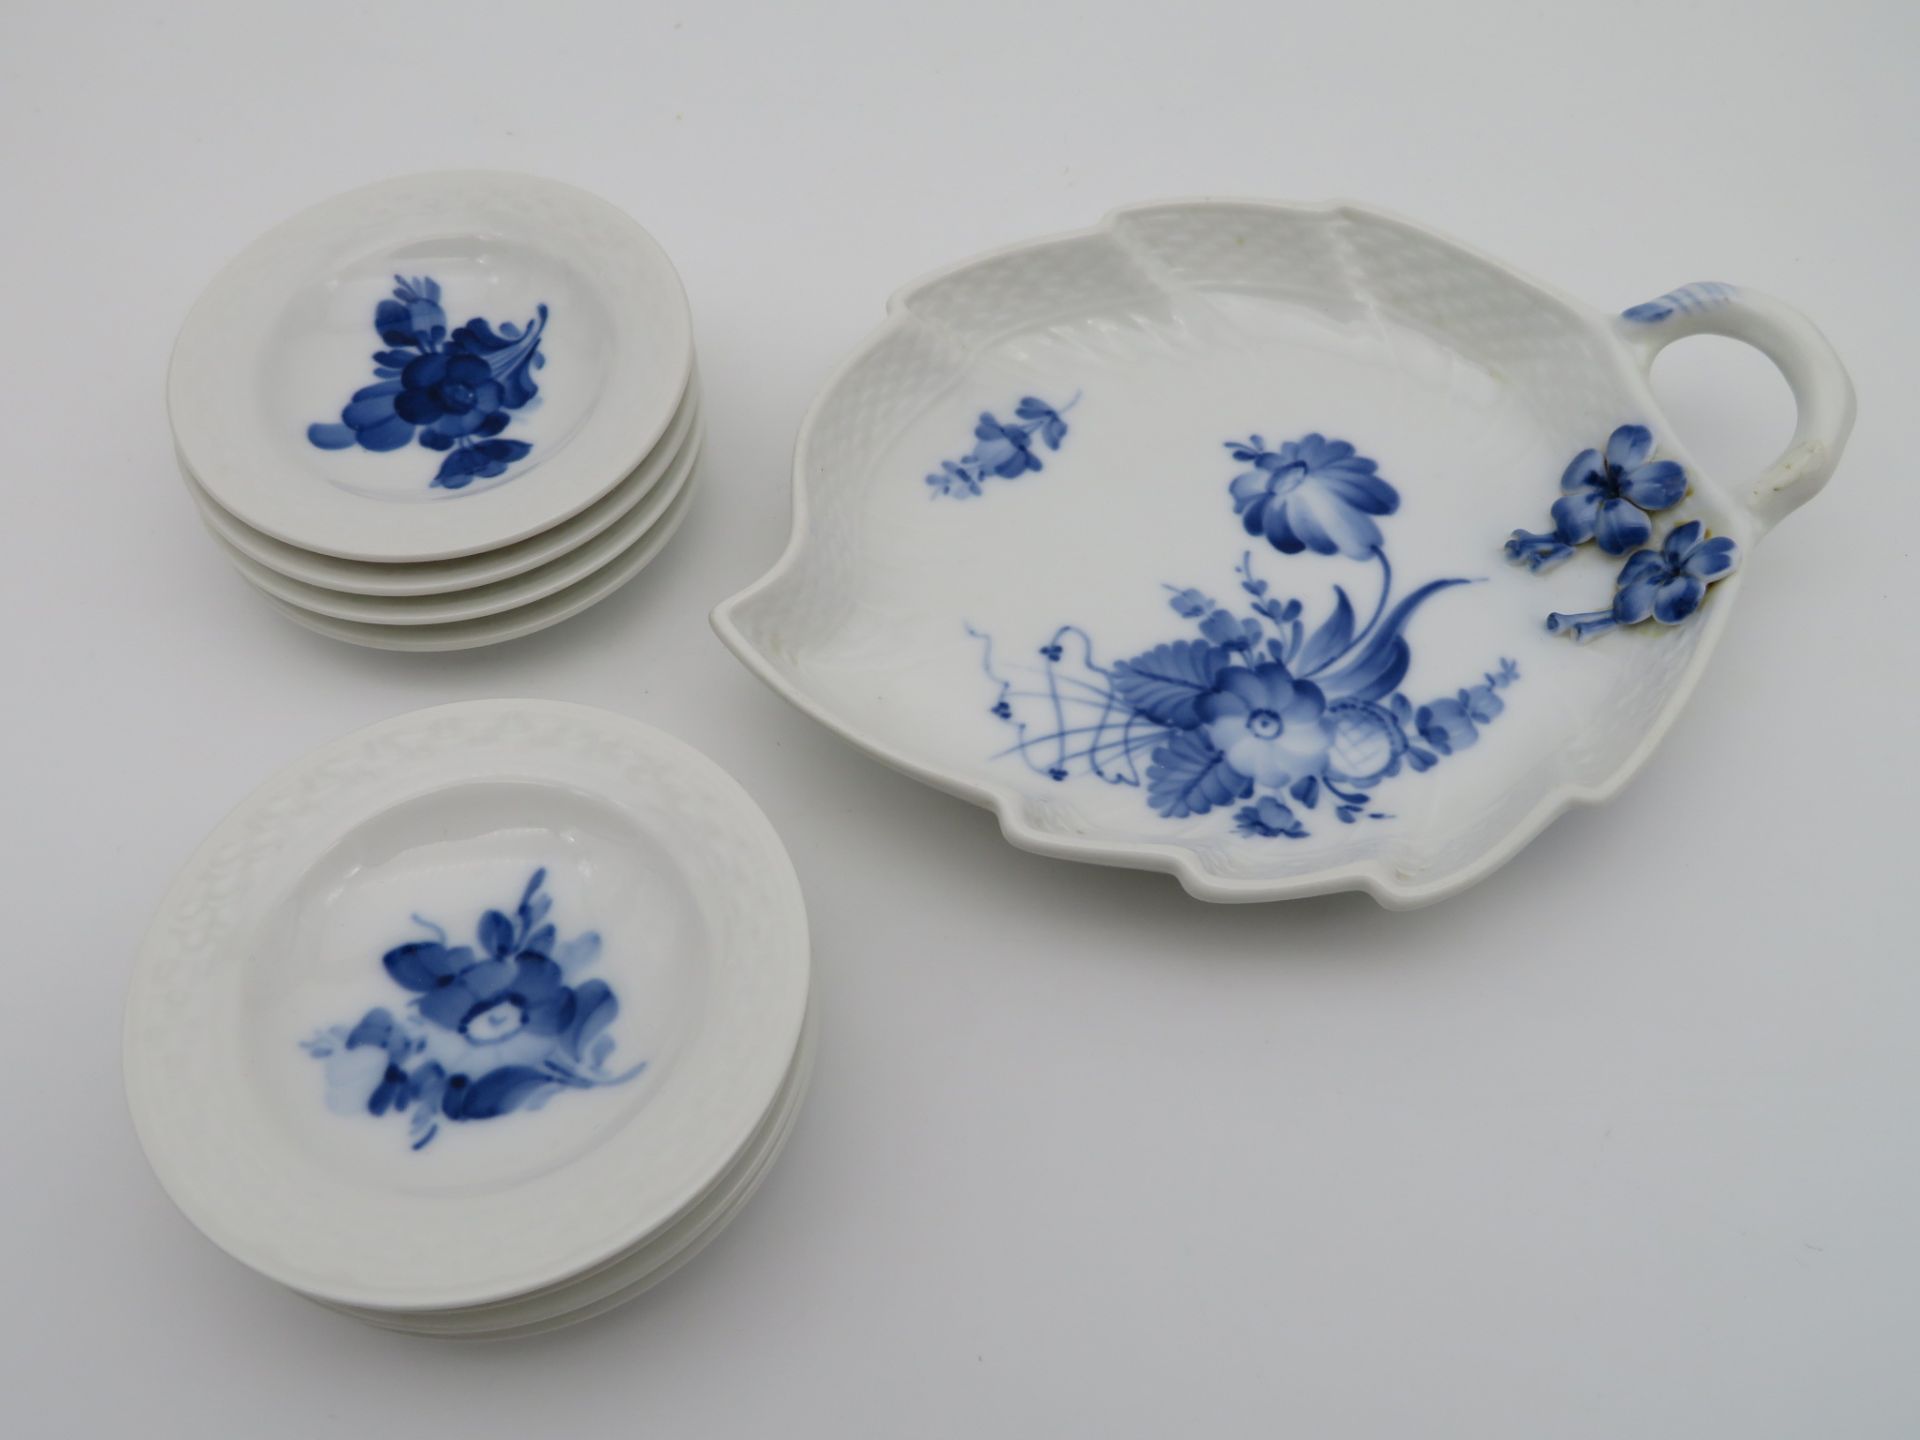 Blattschale mit 8 runden Schälchen, Royal Copenhagen, Modell Blaue Blume, Entwurf Arnold Krog, Weiß